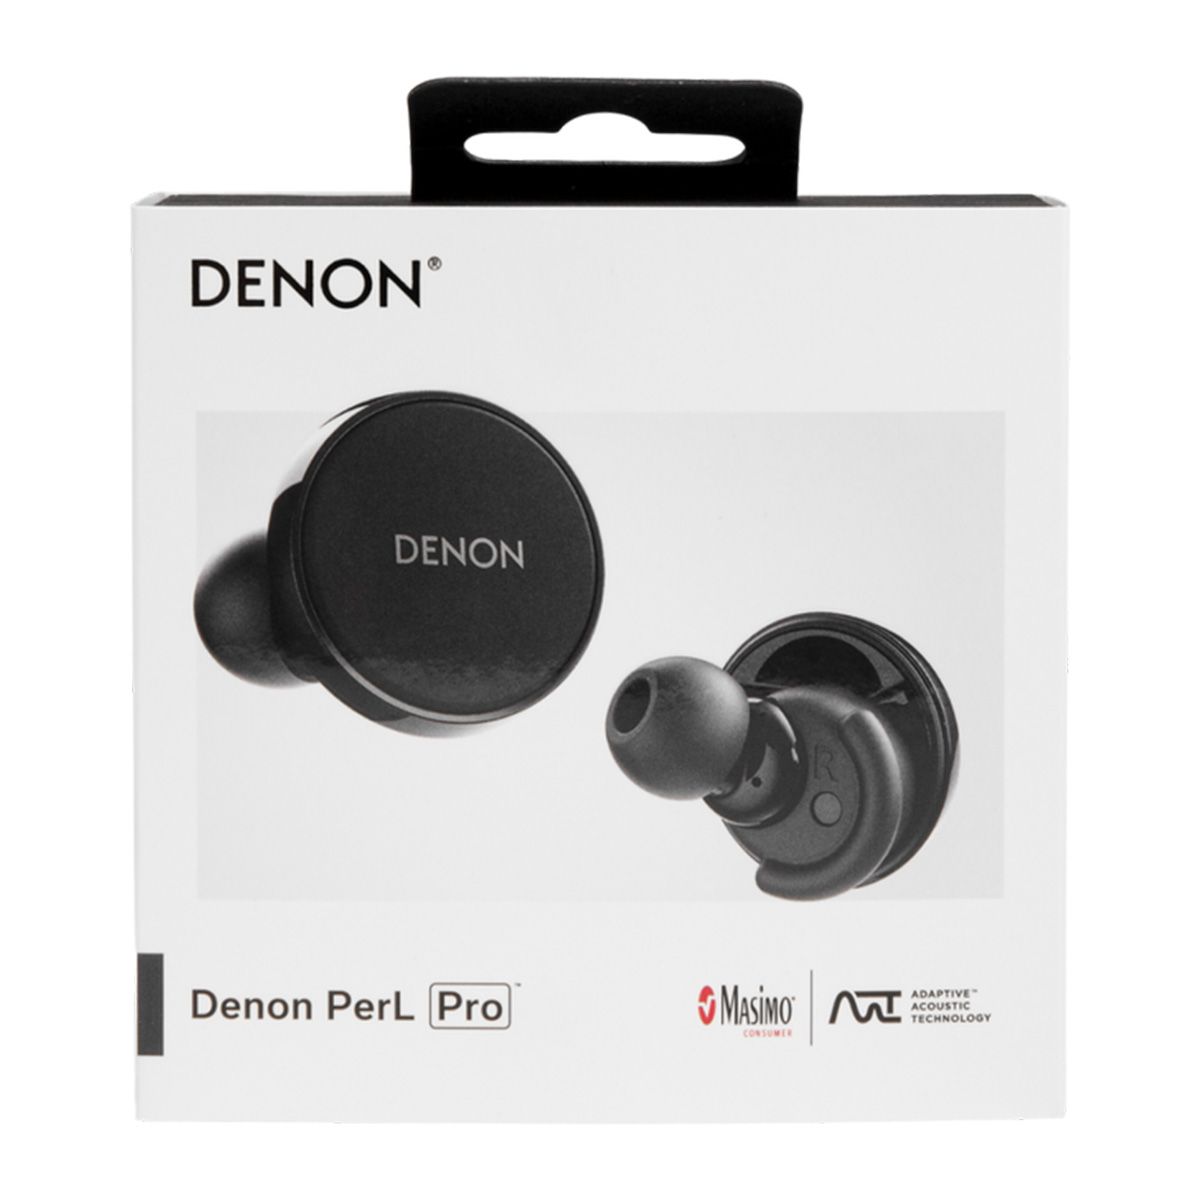 Denon PerL Pro Premium True Wireless Earbuds